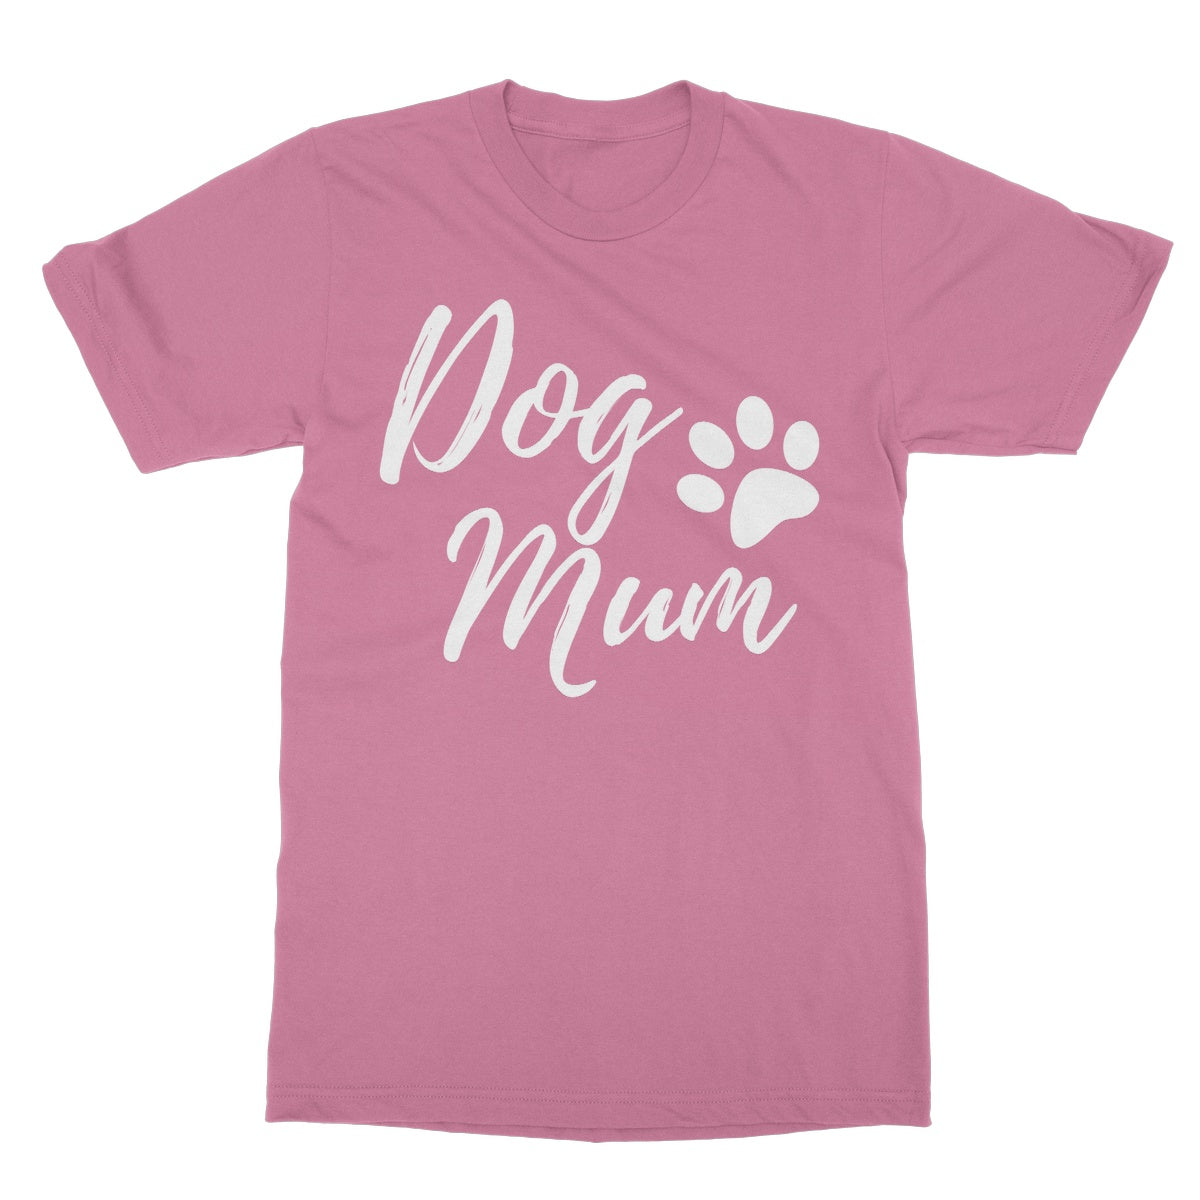 dog mum t shirt pink